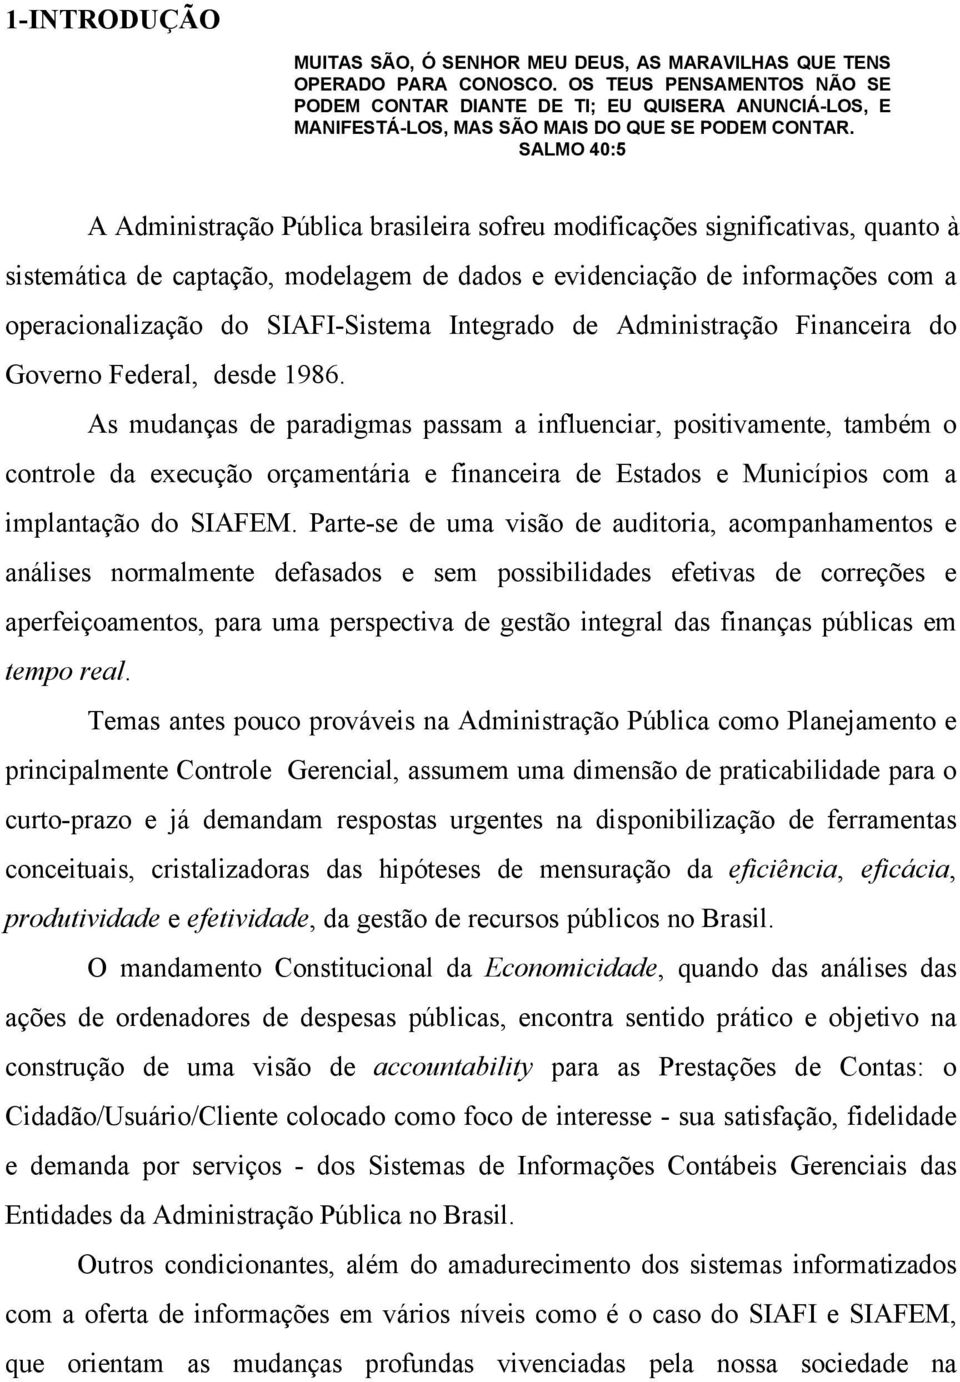 SALMO 40:5 A Administração Pública brasileira sofreu modificações significativas, quanto à sistemática de captação, modelagem de dados e evidenciação de informações com a operacionalização do